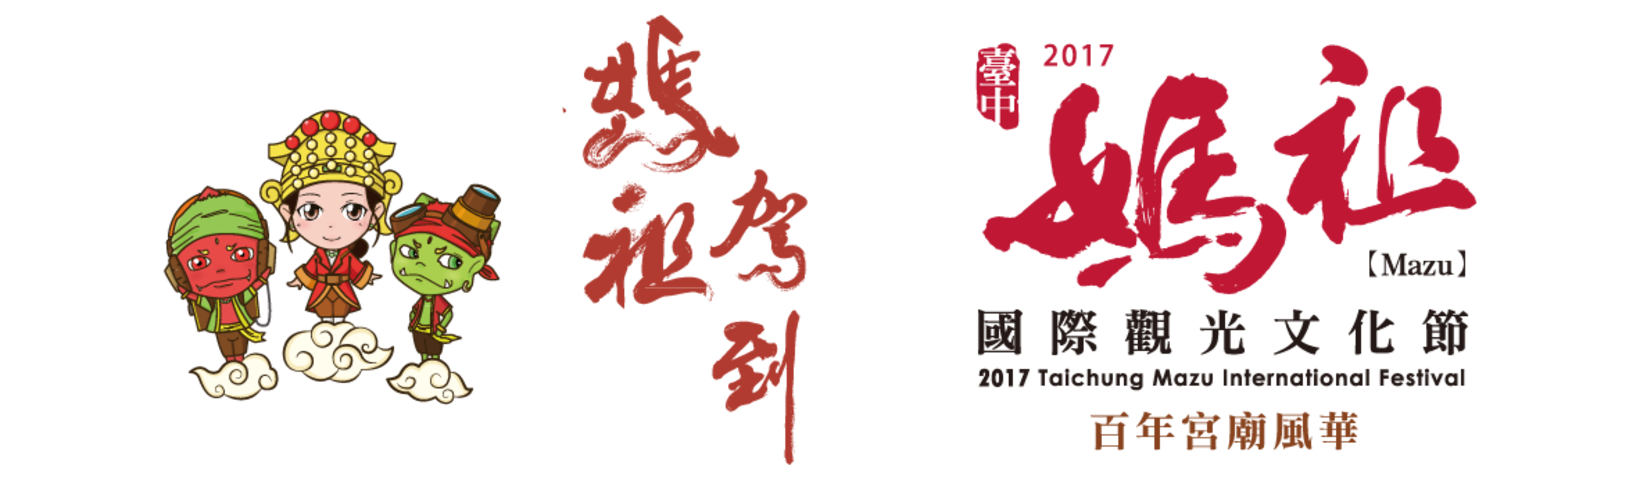 2017台中妈祖国际观光文化节